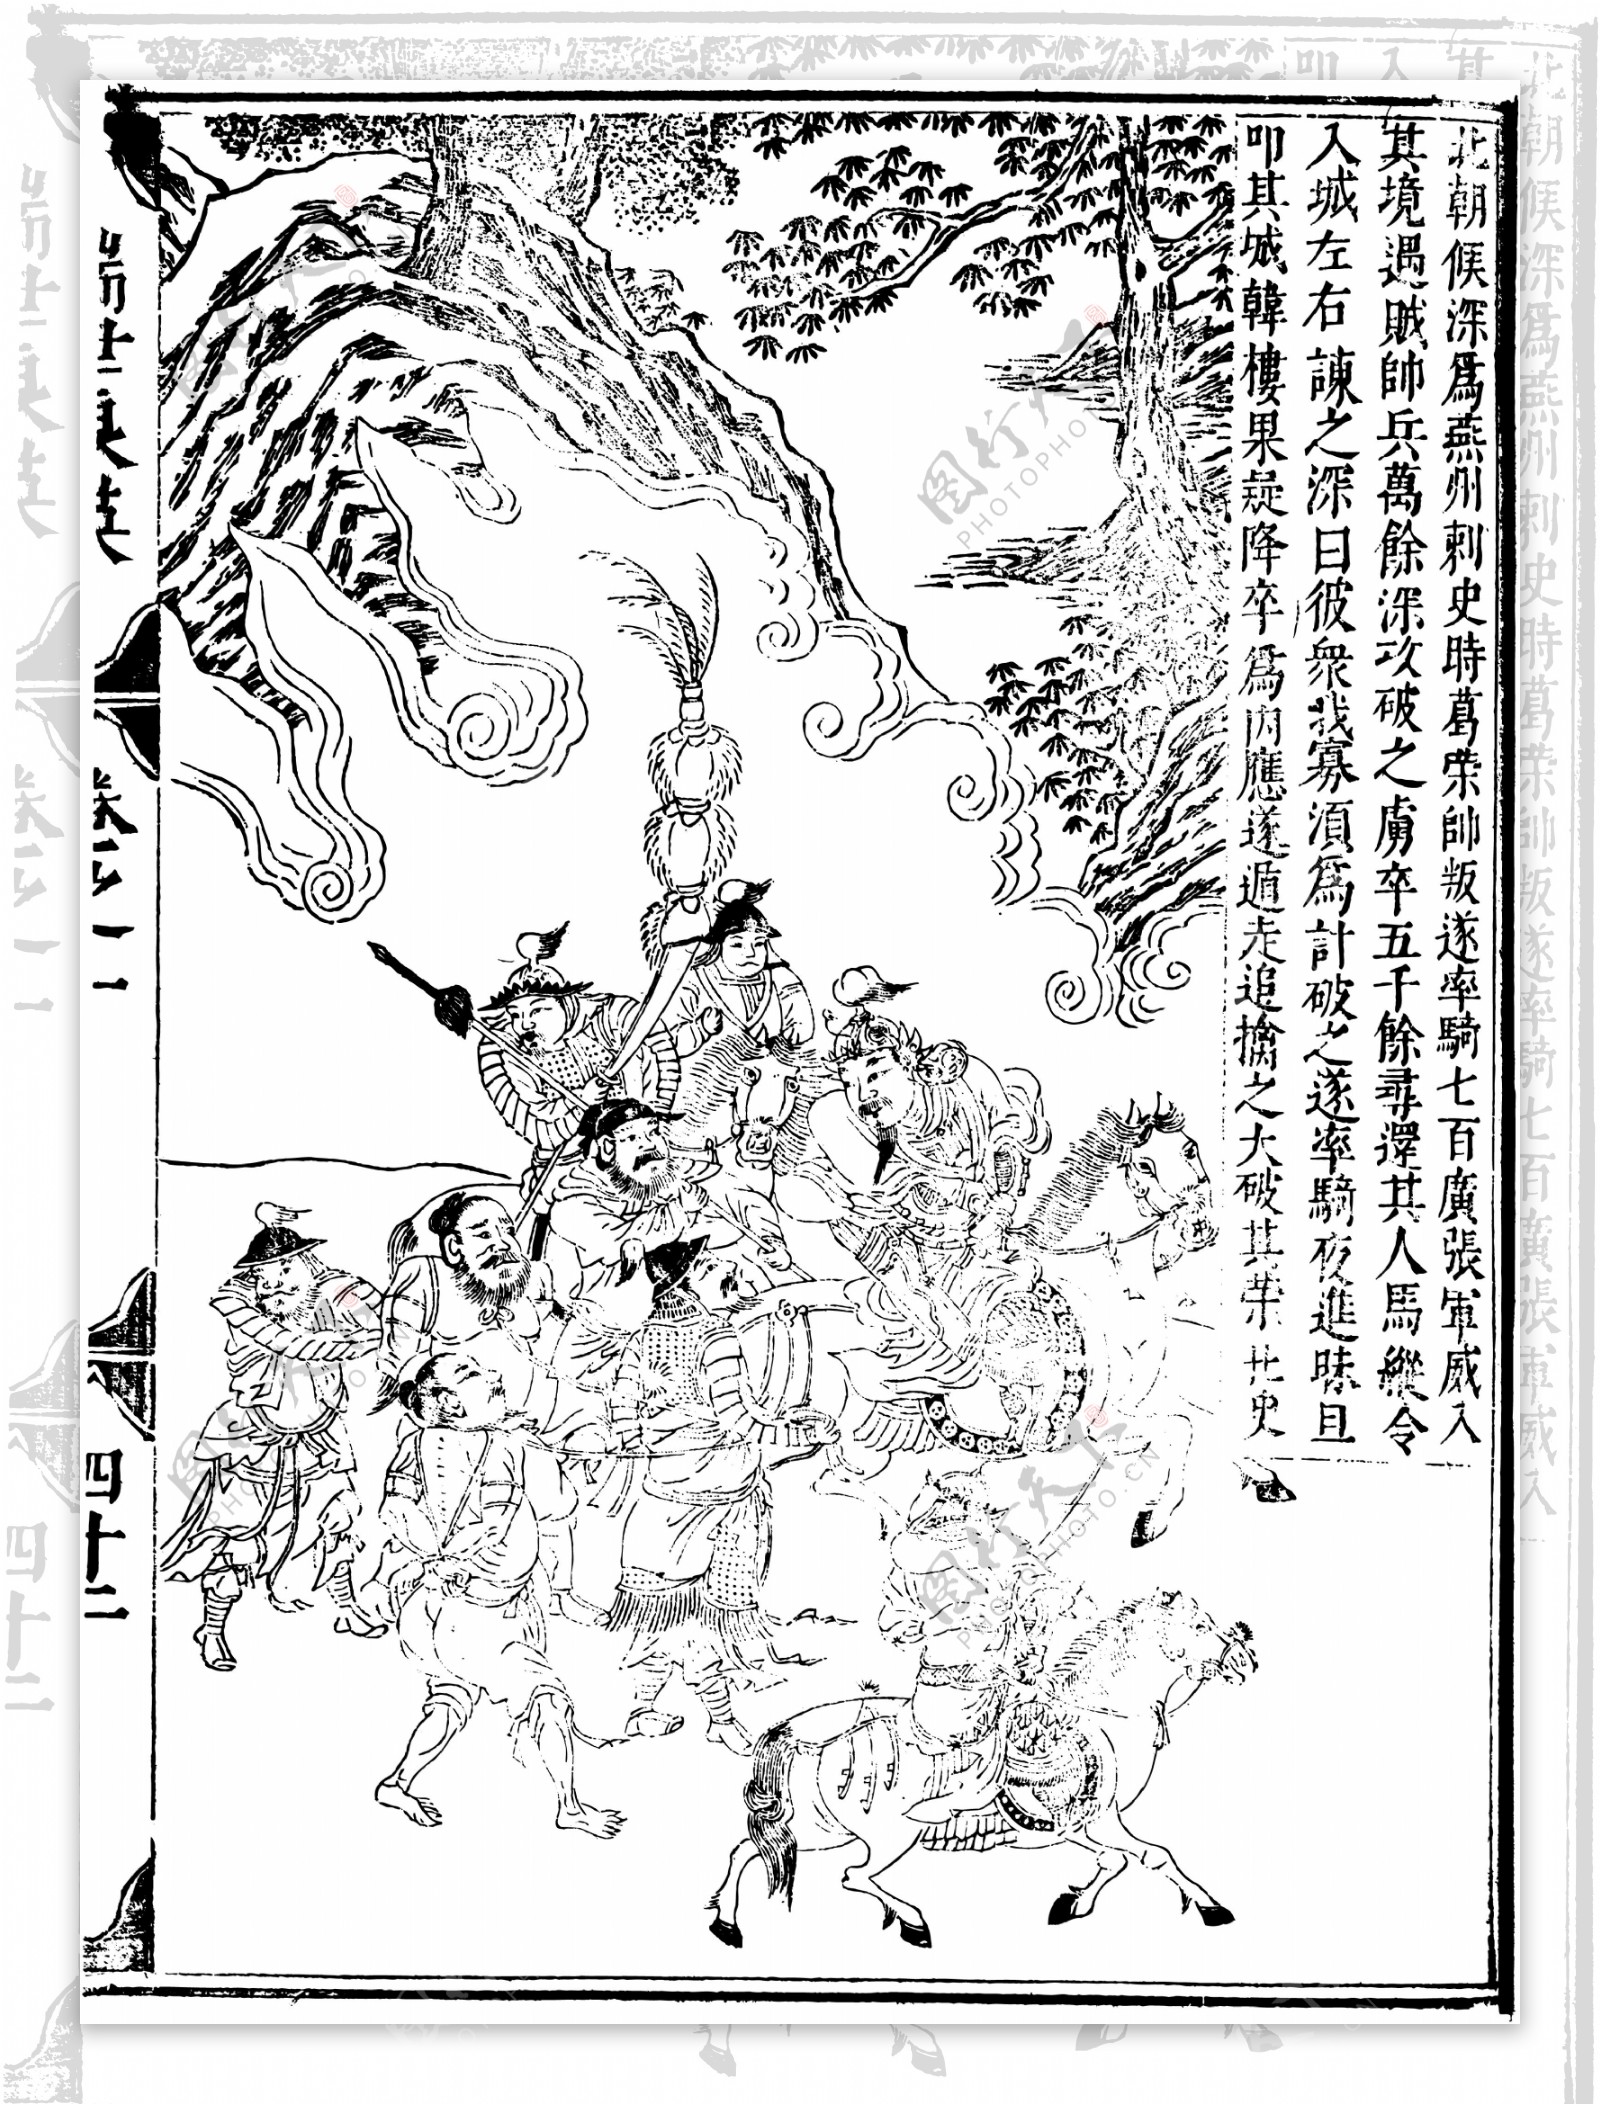 瑞世良英木刻版画中国传统文化66